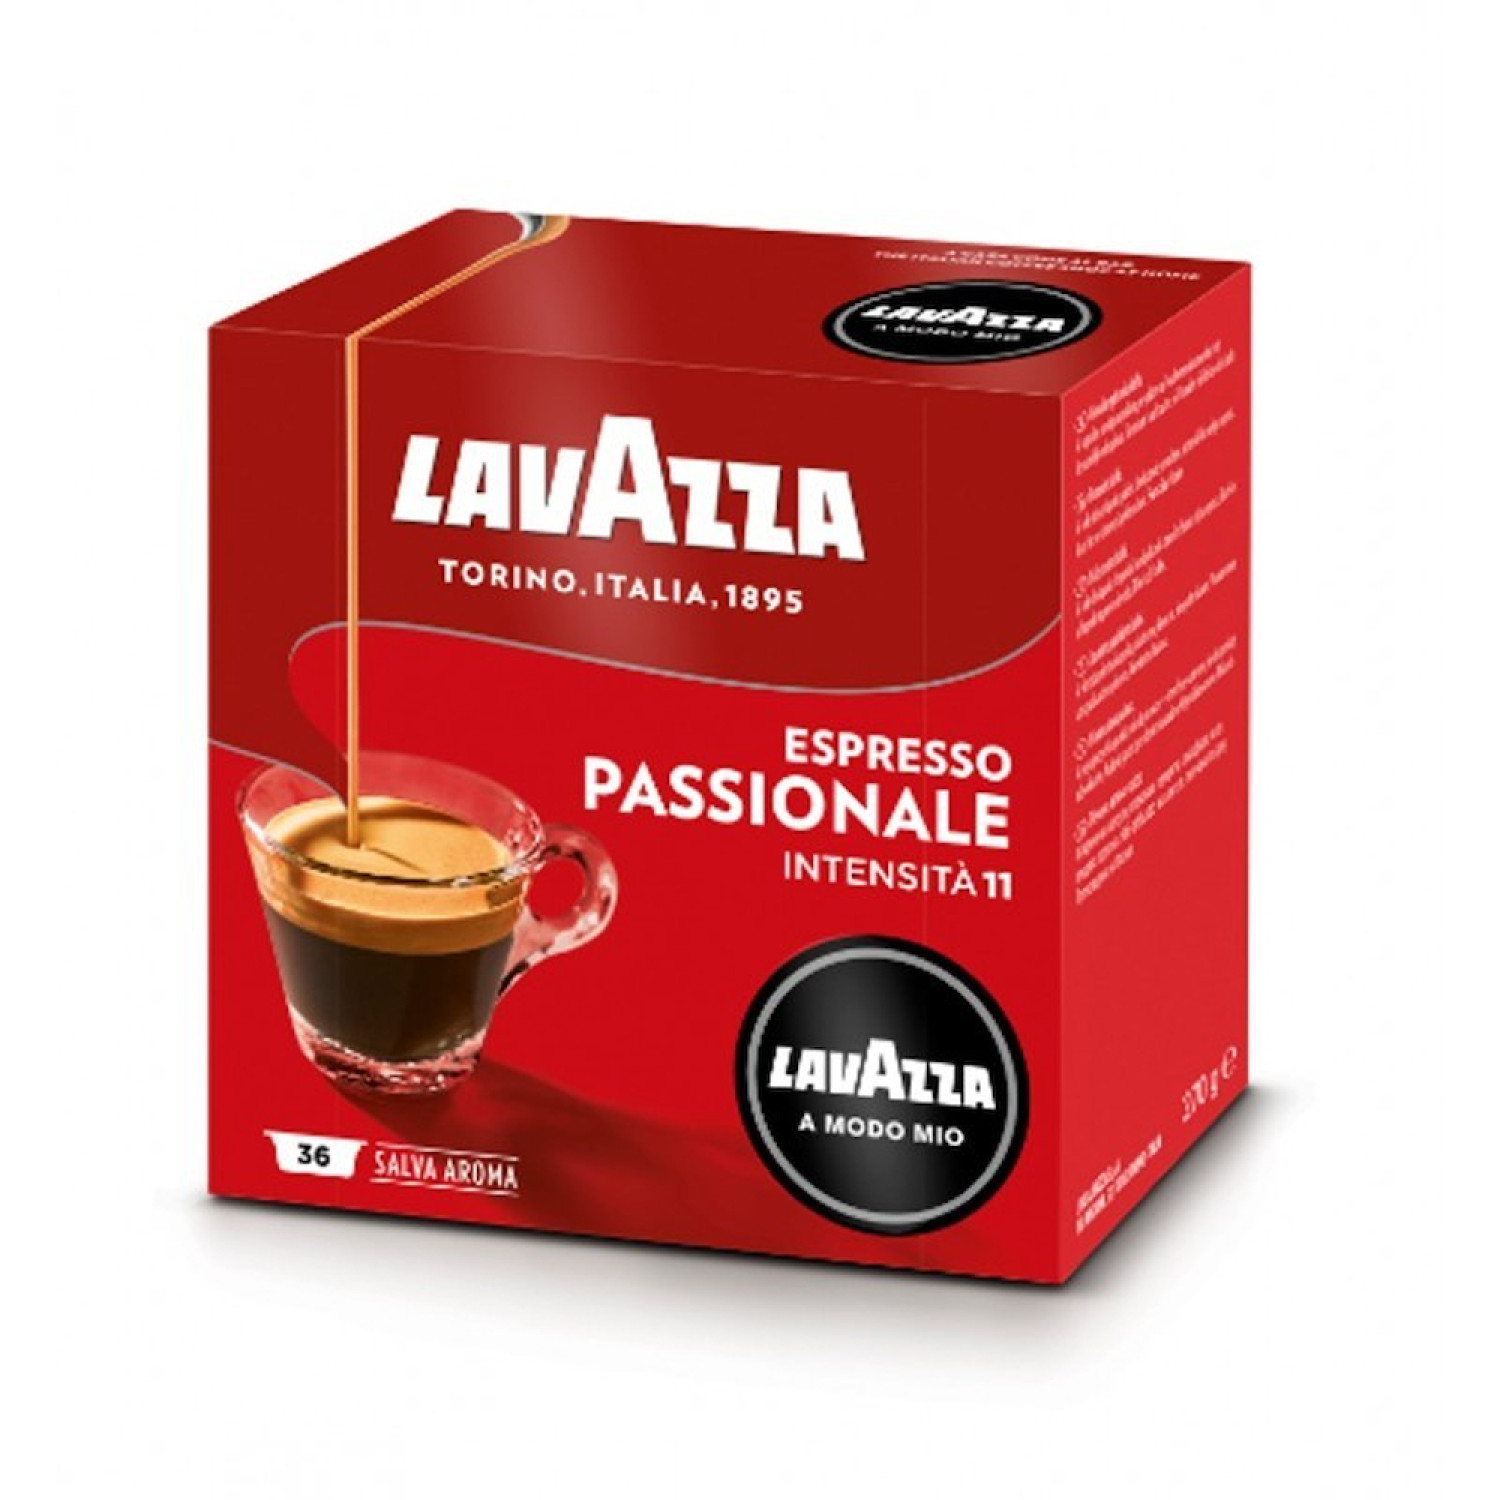 CAPSULE CAFFE' LAVAZZA 8715 PASSIONALE CAFFE' 36C.ASTUCCIO